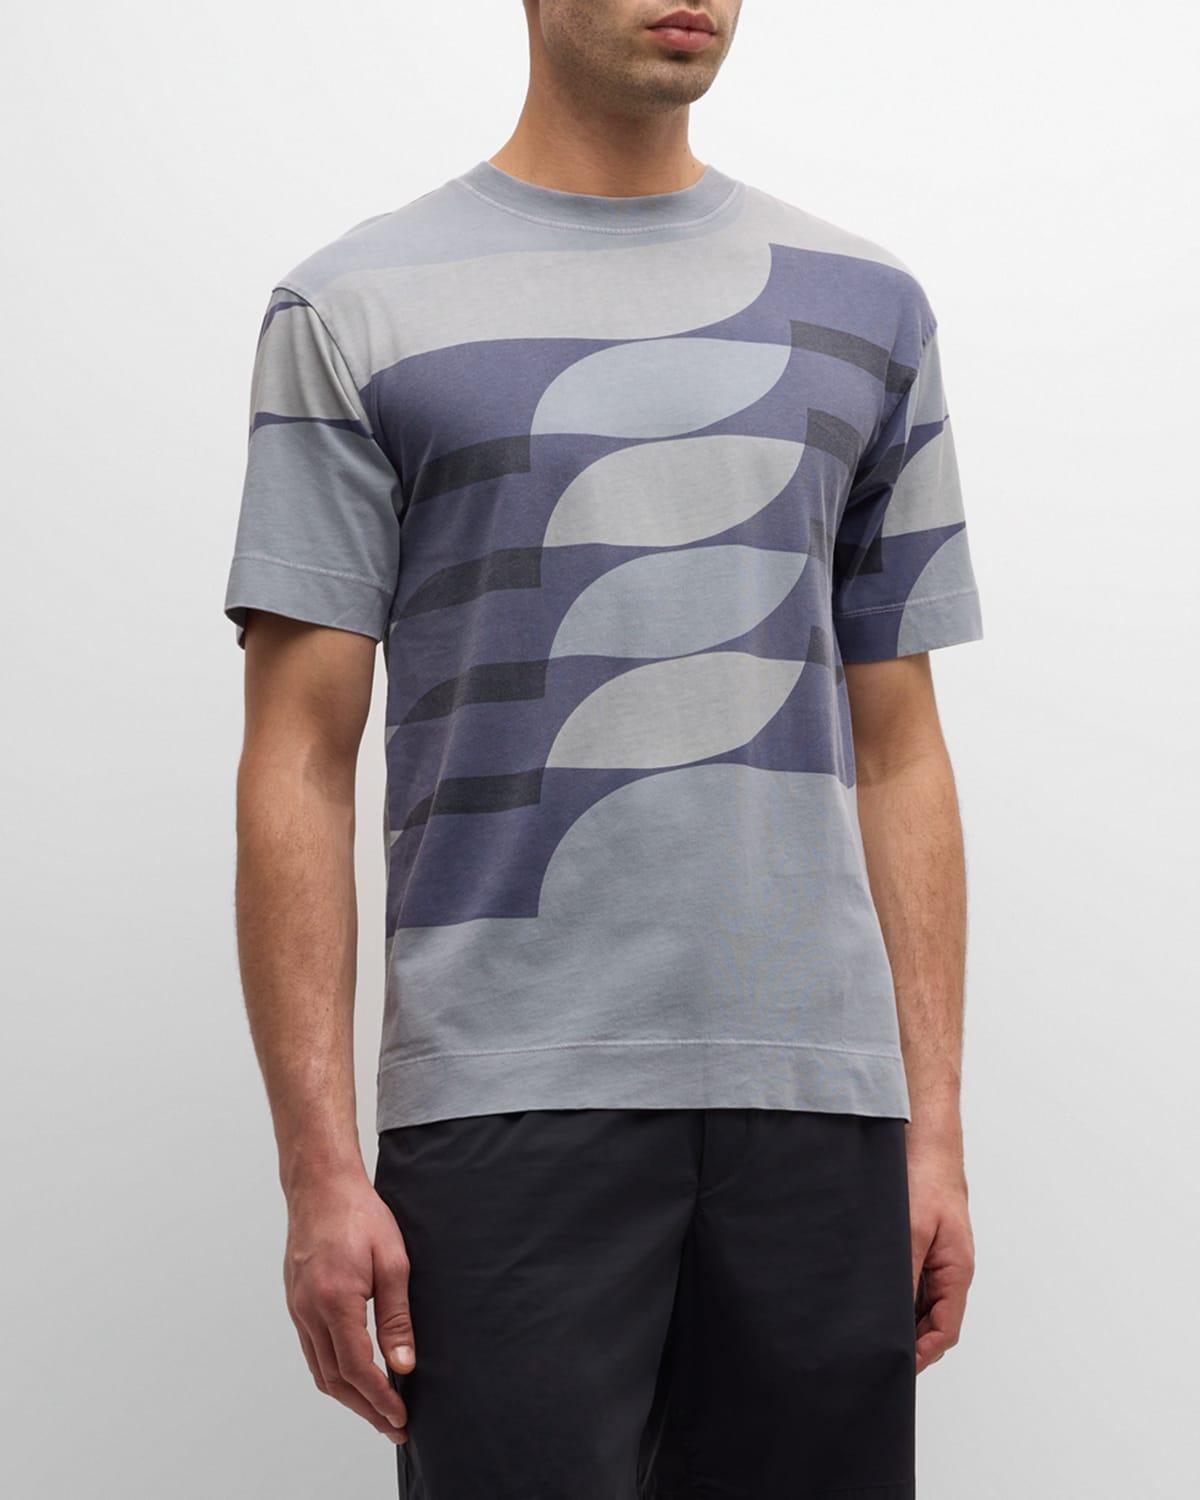 Dries Van Noten Men's Heli Printed Crewneck T-shirt In Cement